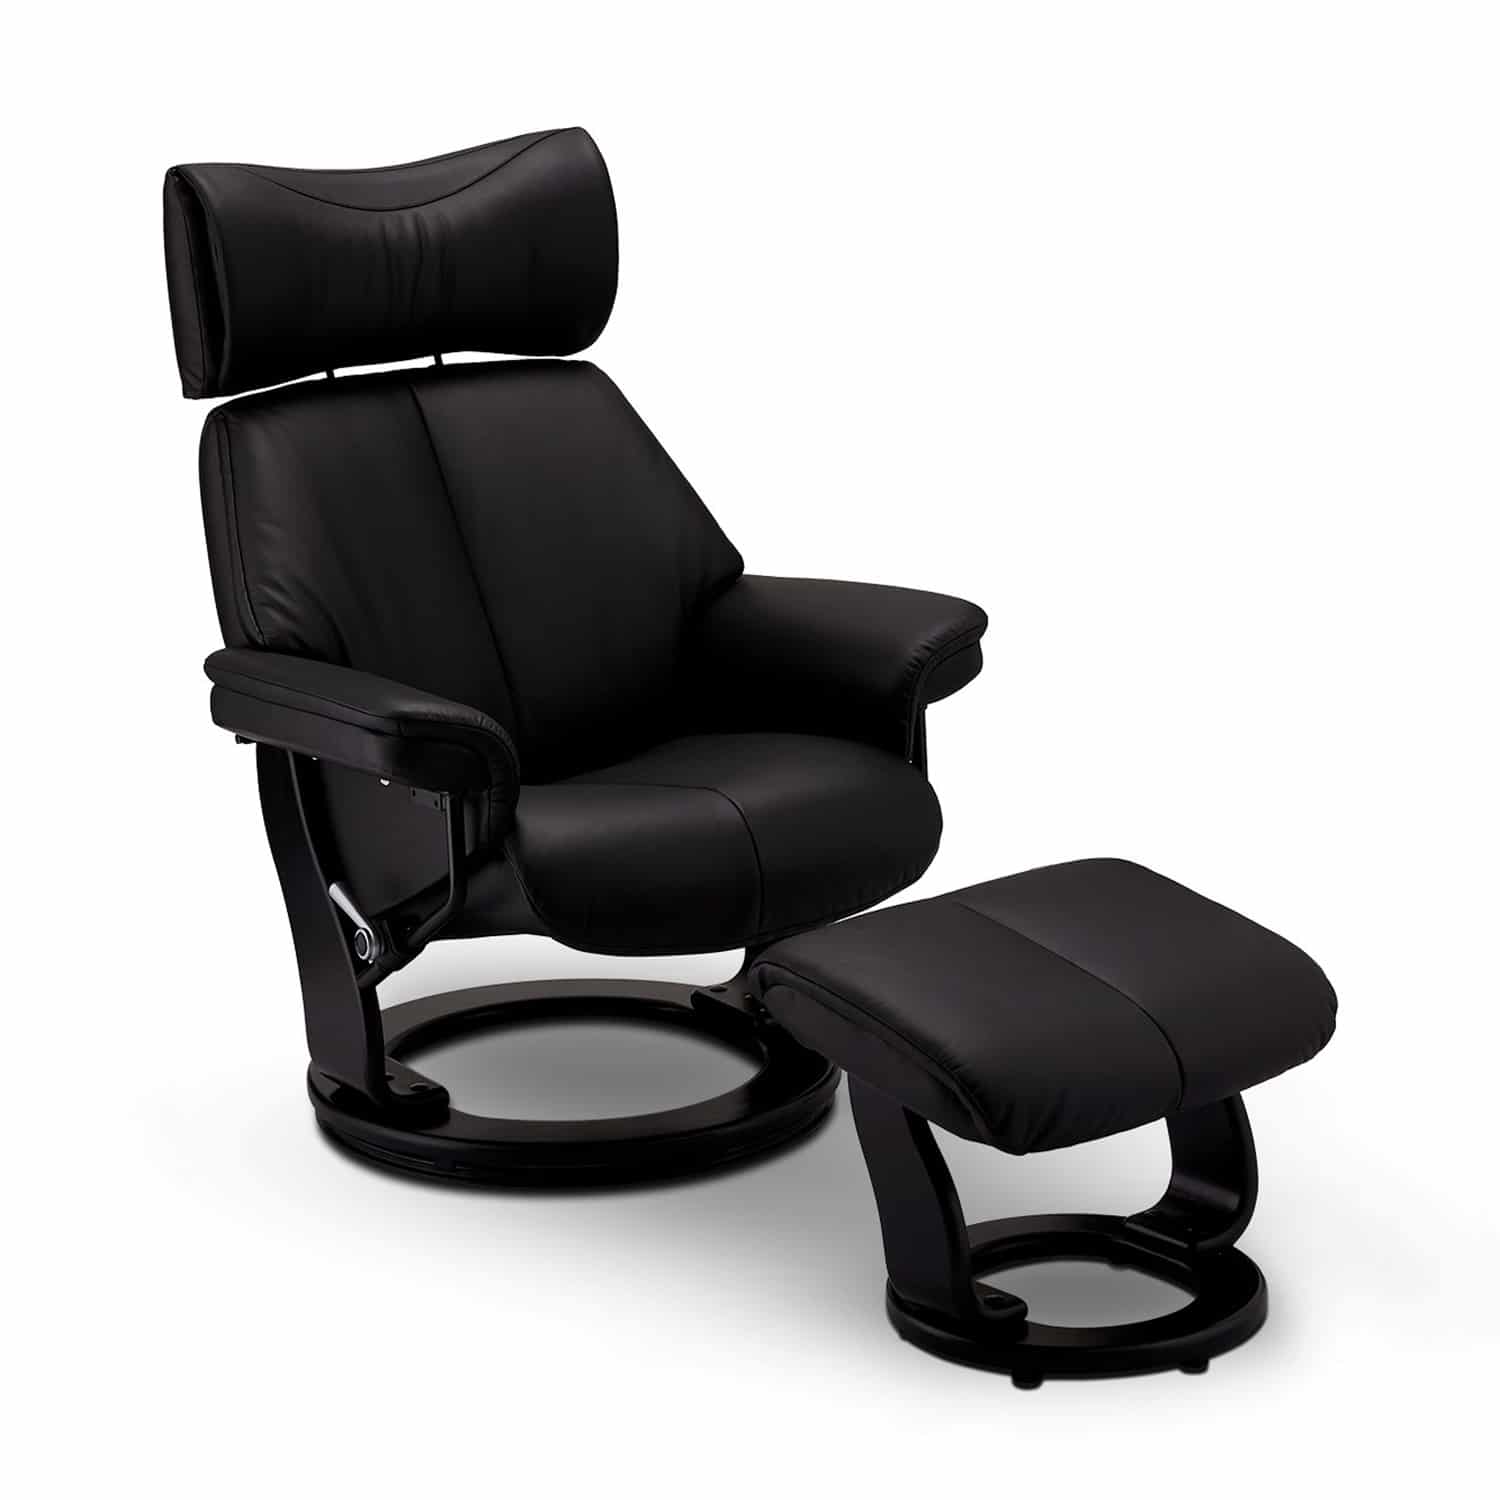 Toledo recliner lænestol, m. armlæn, fodskammel, drejefunktion og justerbar nakke - sort læder -